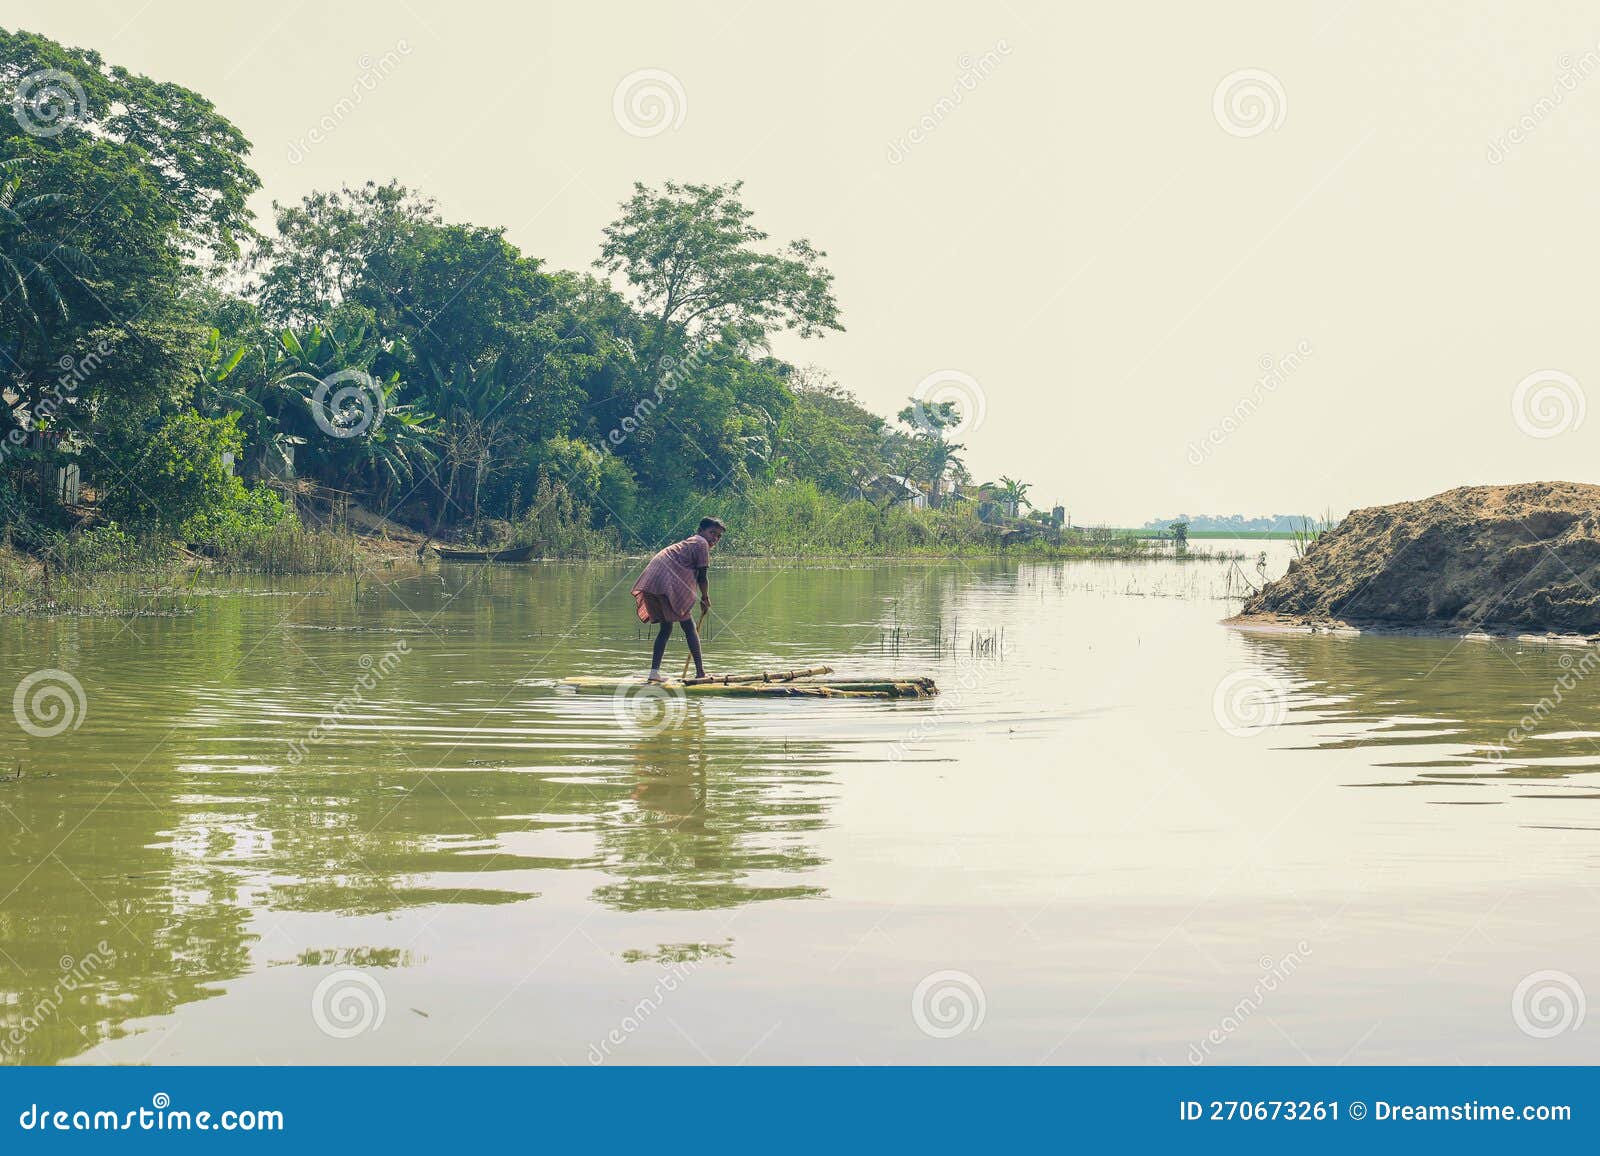 Small Fishing Village Bangladesh Stock Photos - Free & Royalty